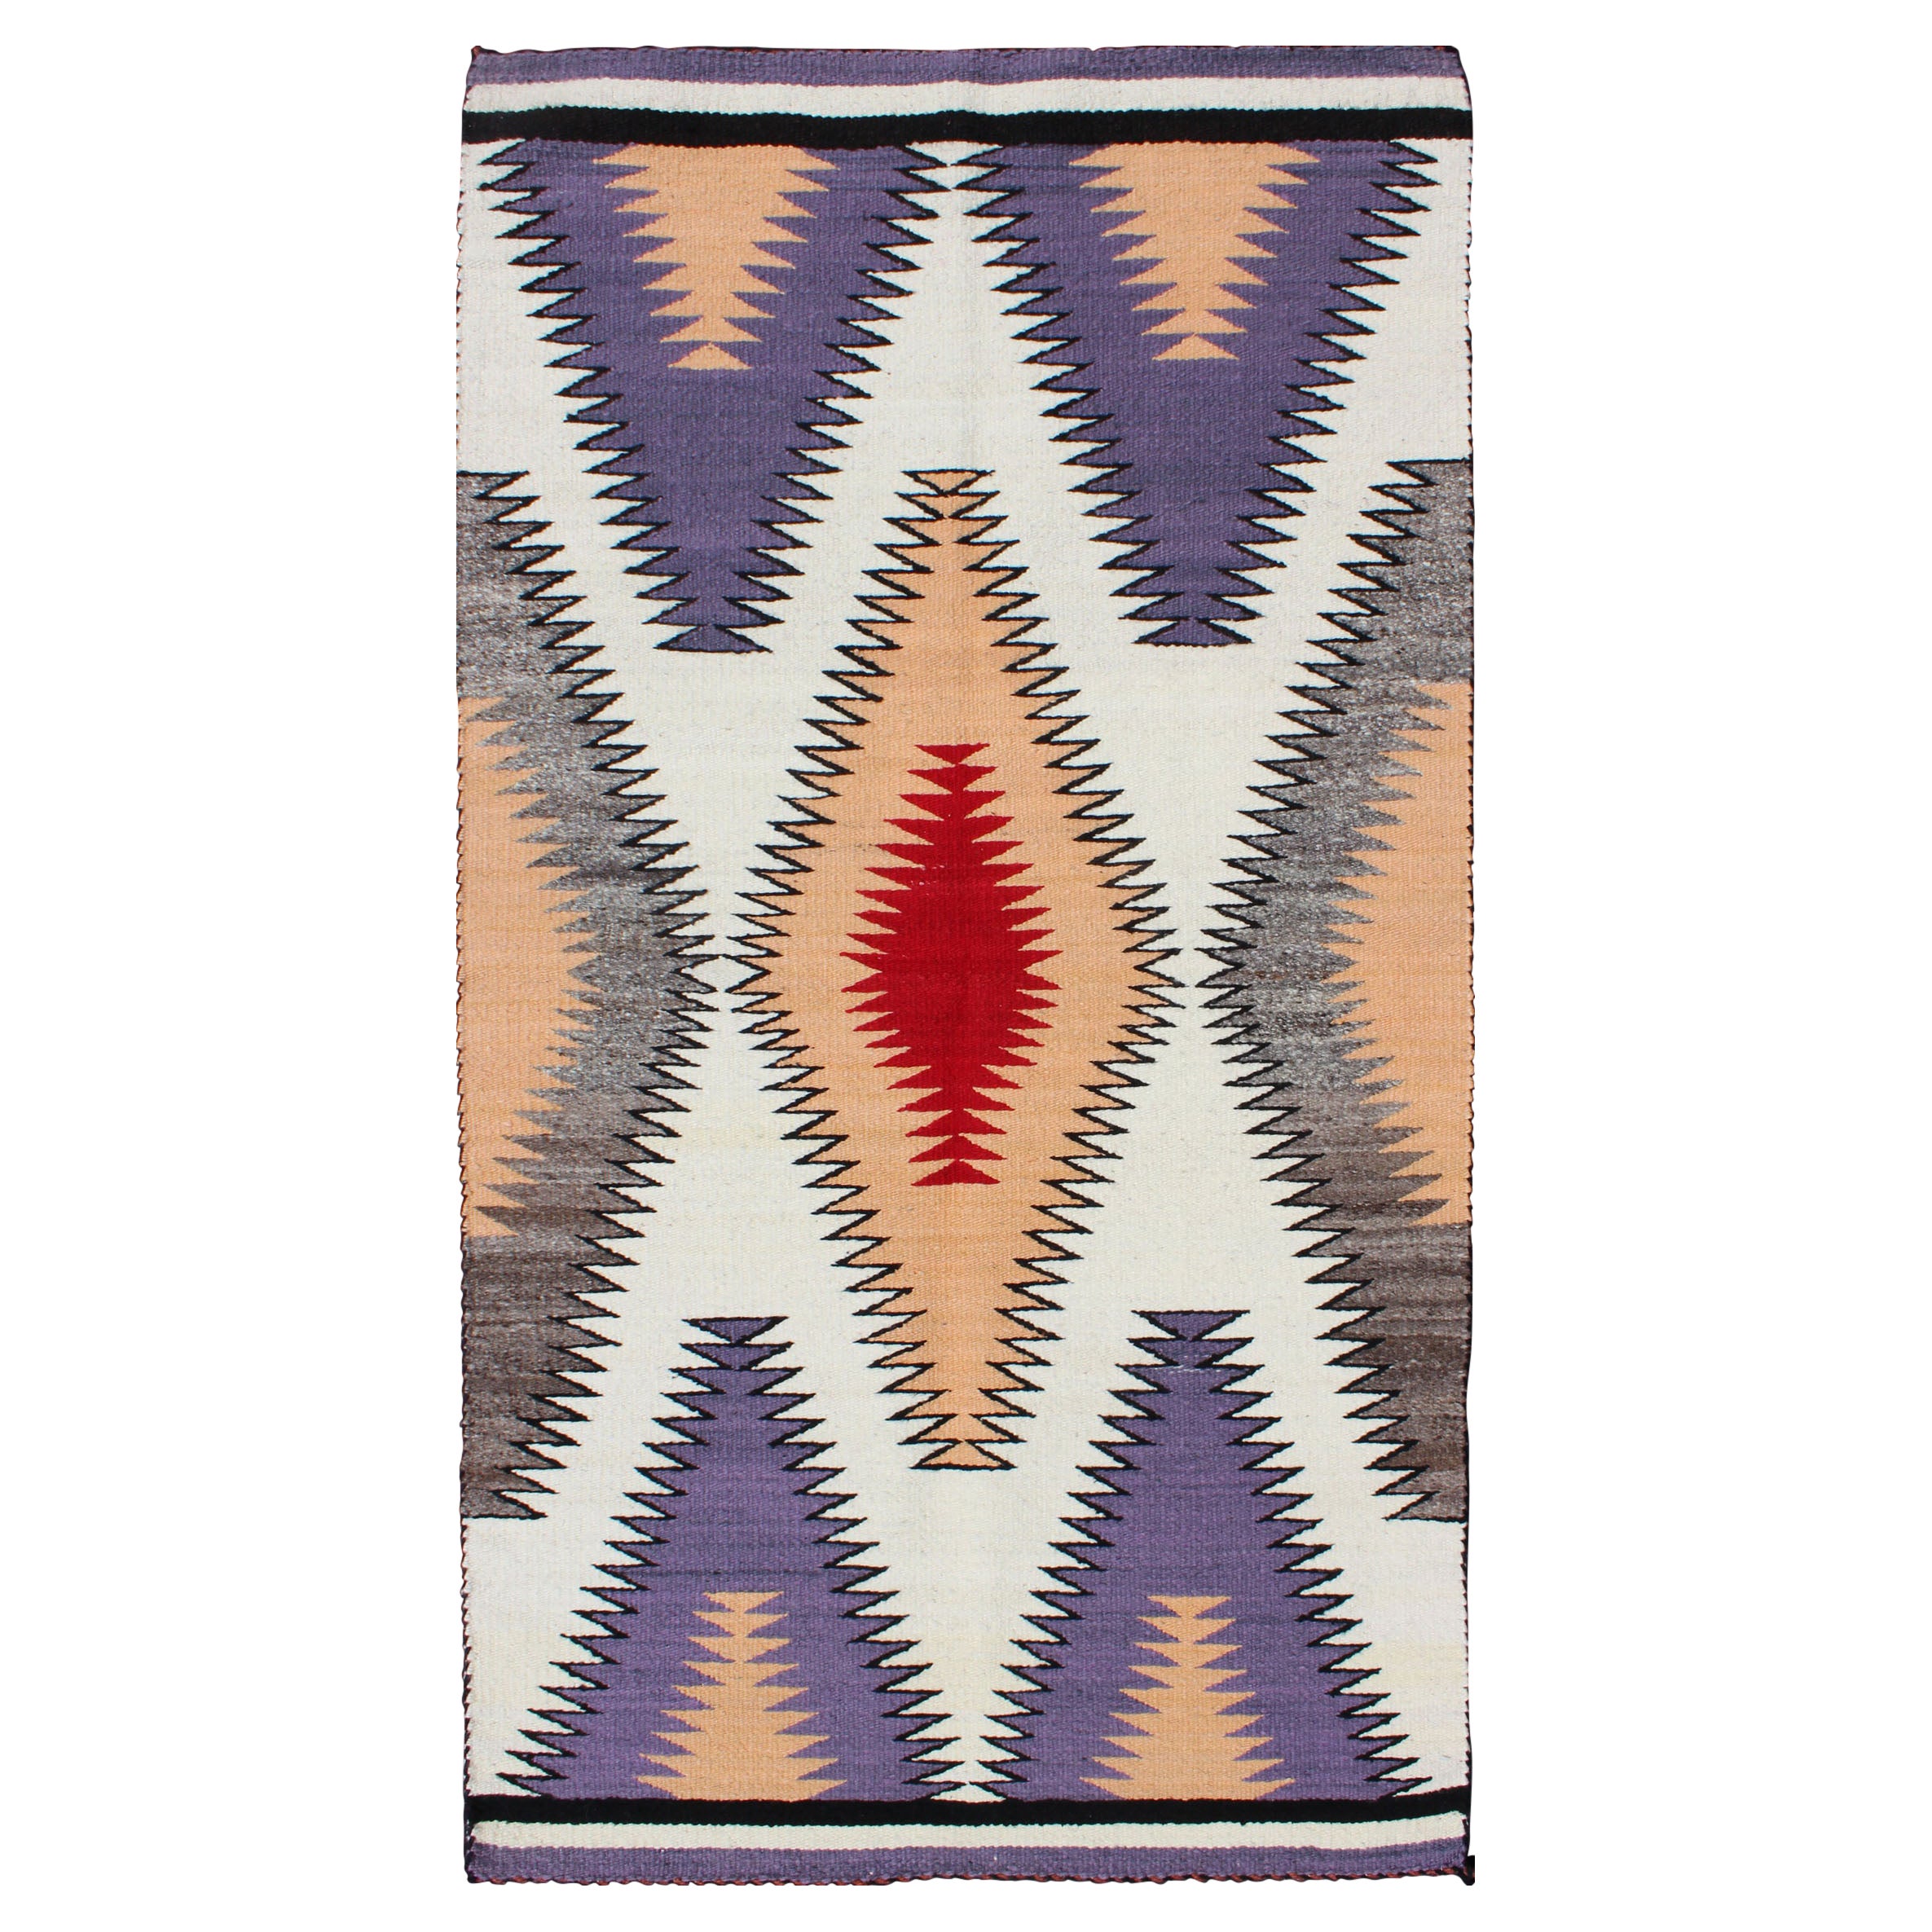 Navajo-Teppich in Violett, Grau, Elfenbein, Schwarz, Pfirsich, Lavendel und Rot